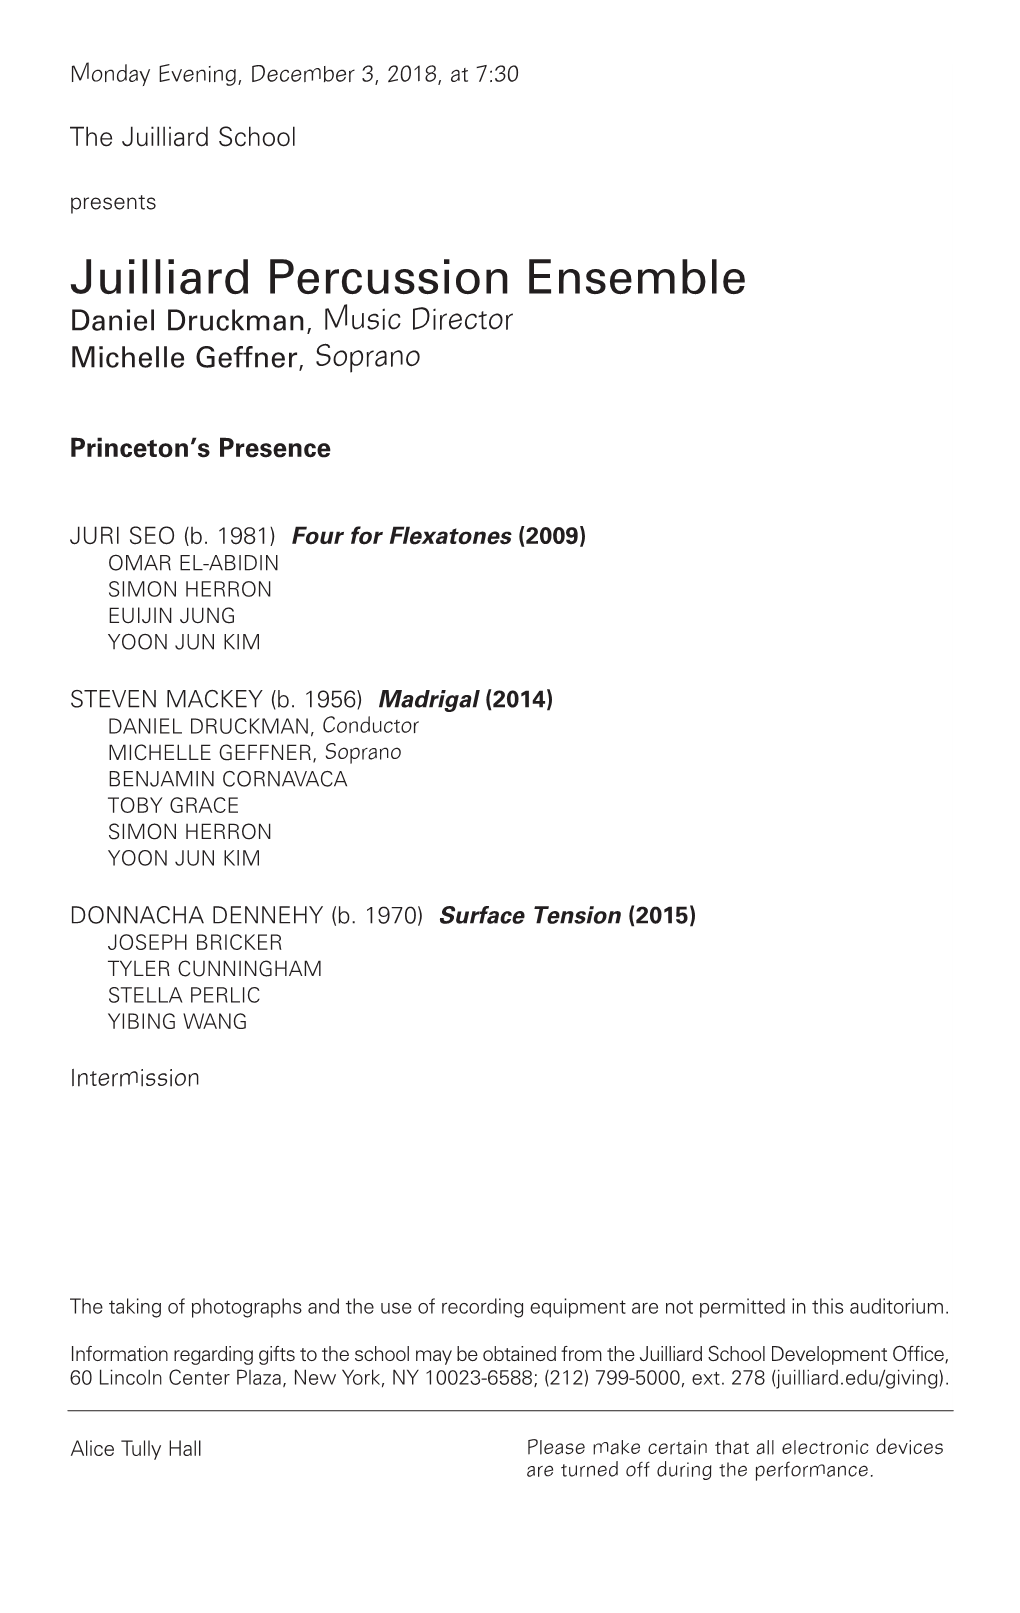 Juilliard Percussion Ensemble Daniel Druckman , Music Director Michelle Geffner , Soprano